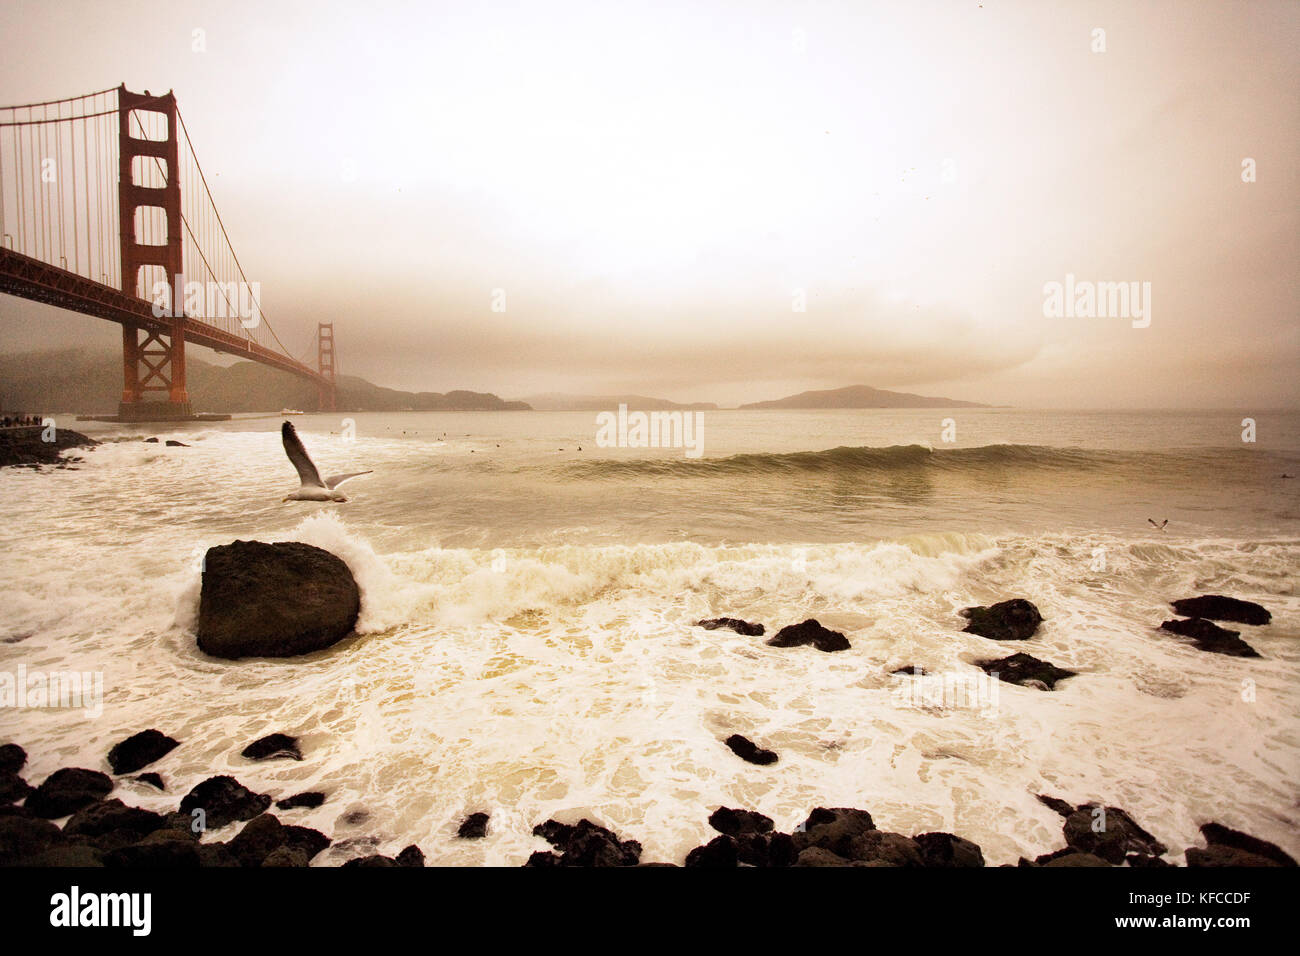 Stati Uniti, California, San Francisco, il Golden Gate bridge con un gabbiano e surfisti, fort point Foto Stock